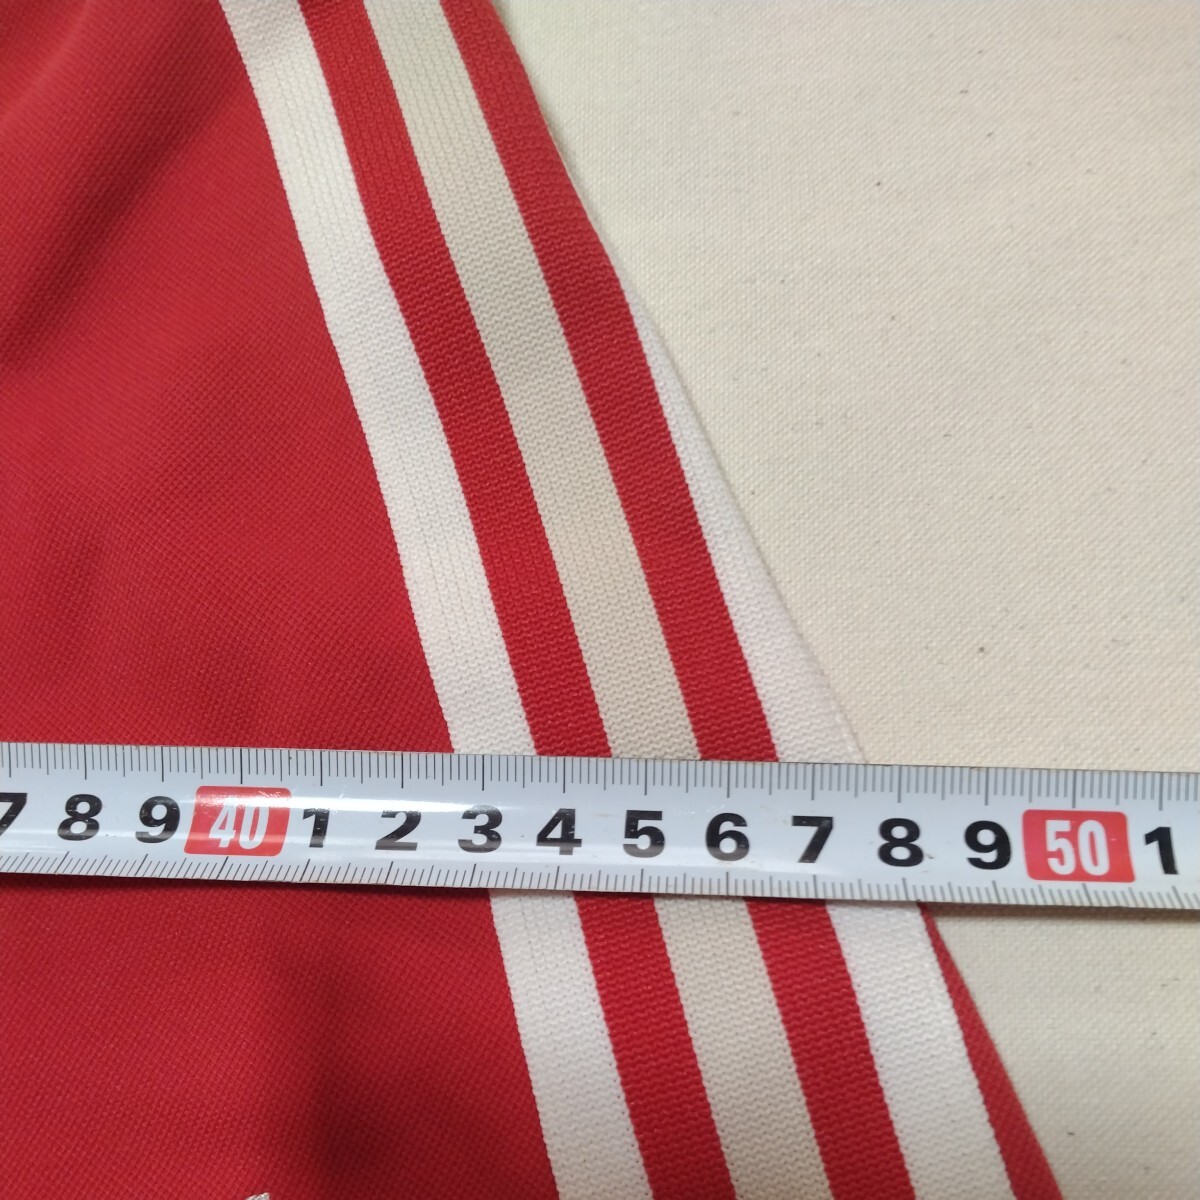  Adidas шорты красный форма сделано в Китае предварительный кнопка есть полиэстер 100% JD1018